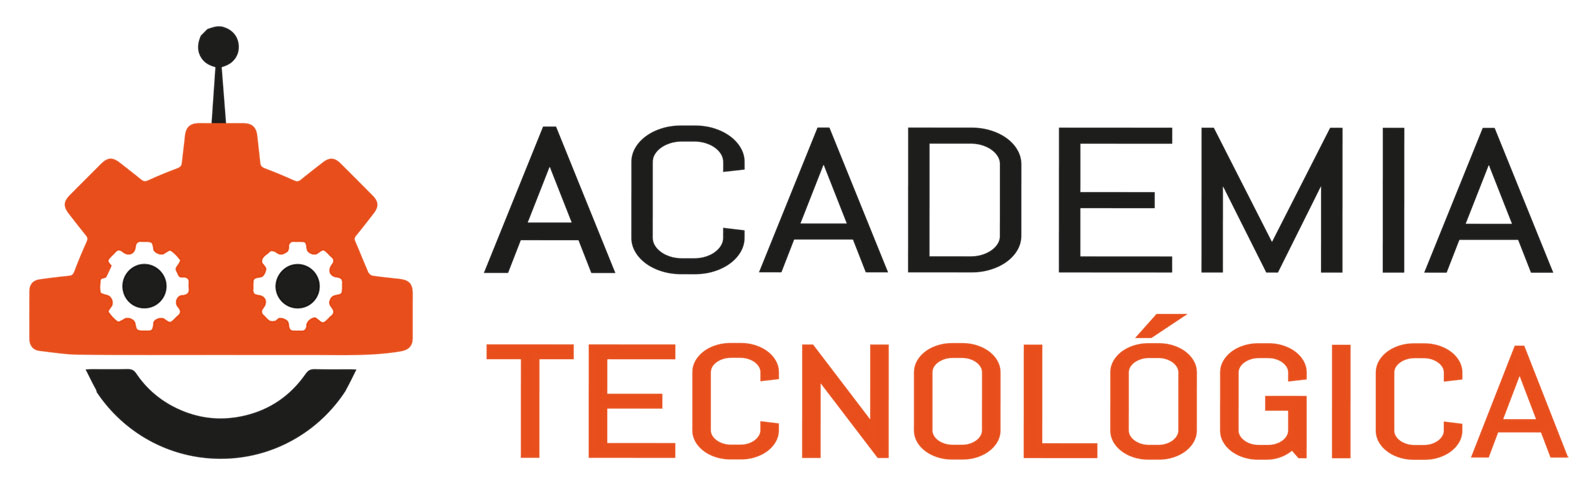 academiatecnologica.es